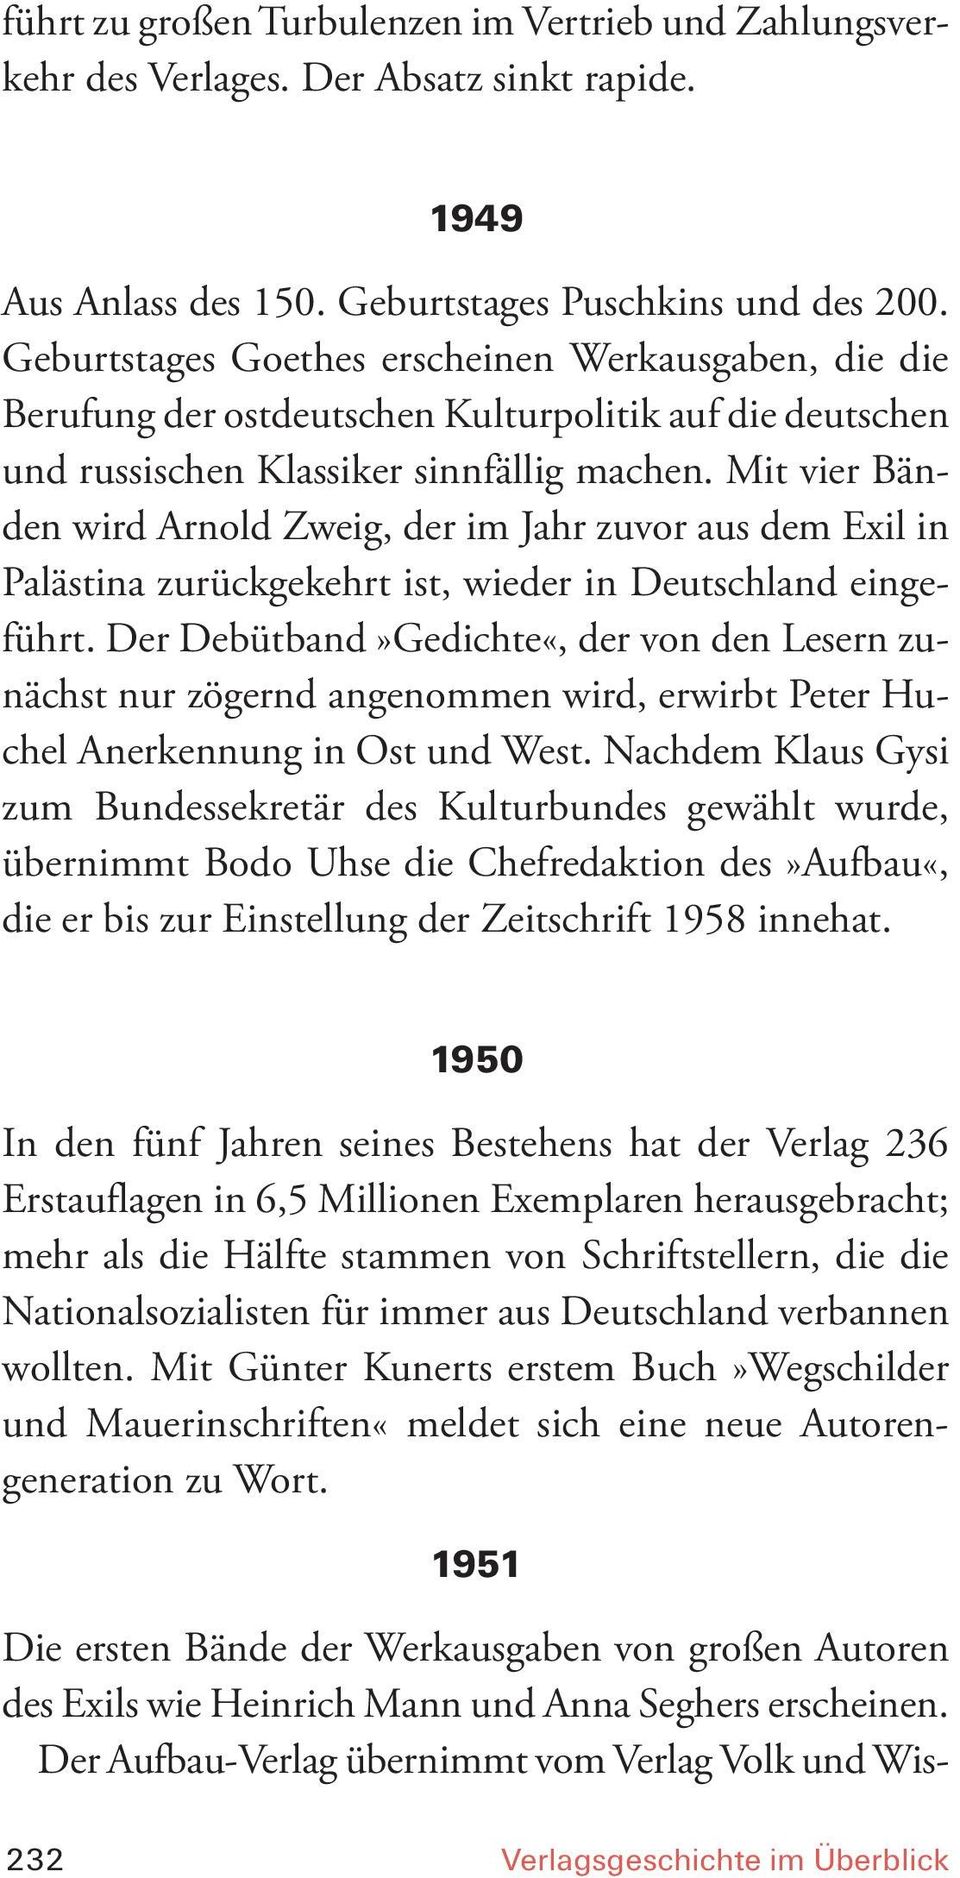 Mit vier Bänden wird Arnold Zweig, der im Jahr zuvor aus dem Exil in Palästina zurückgekehrt ist, wieder in Deutschland eingeführt.